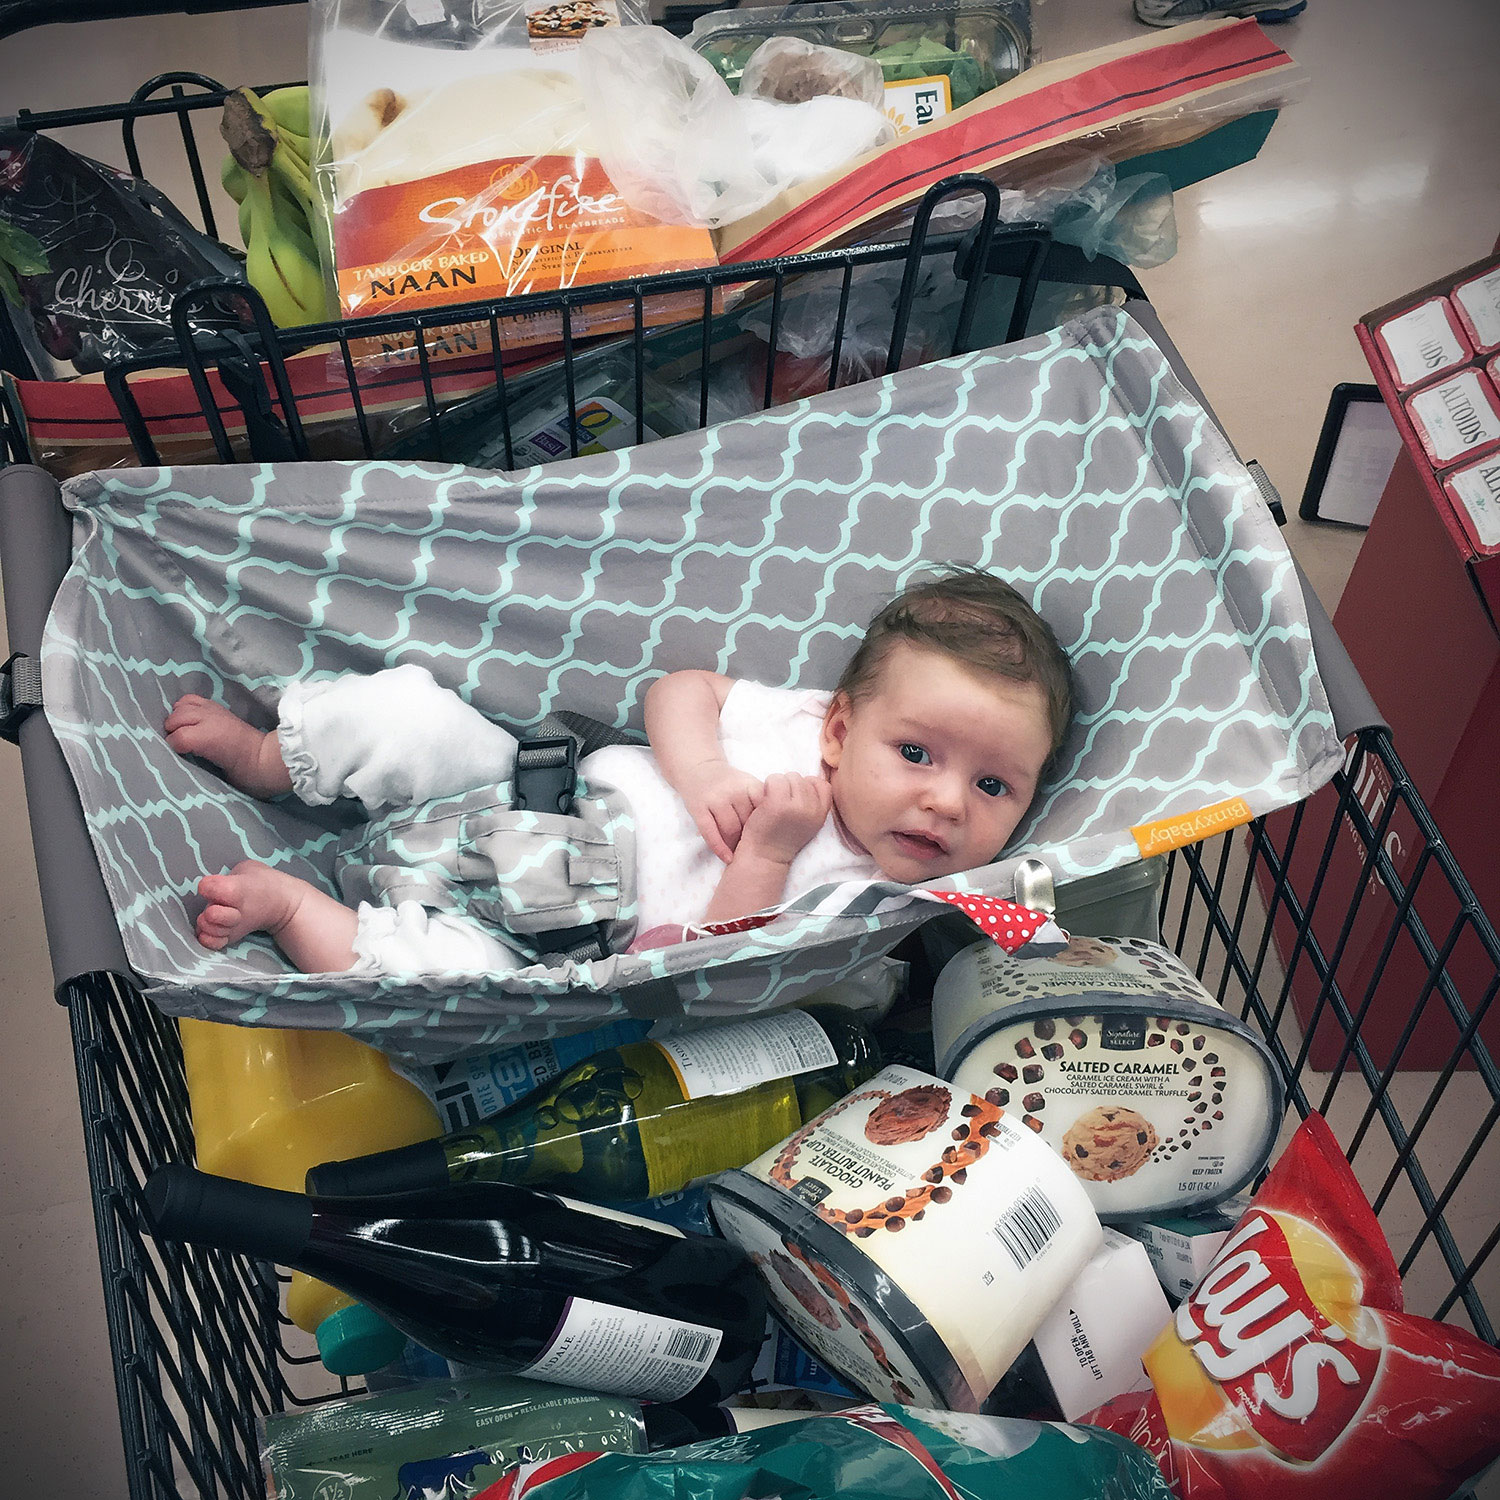 binxy baby shopping cart